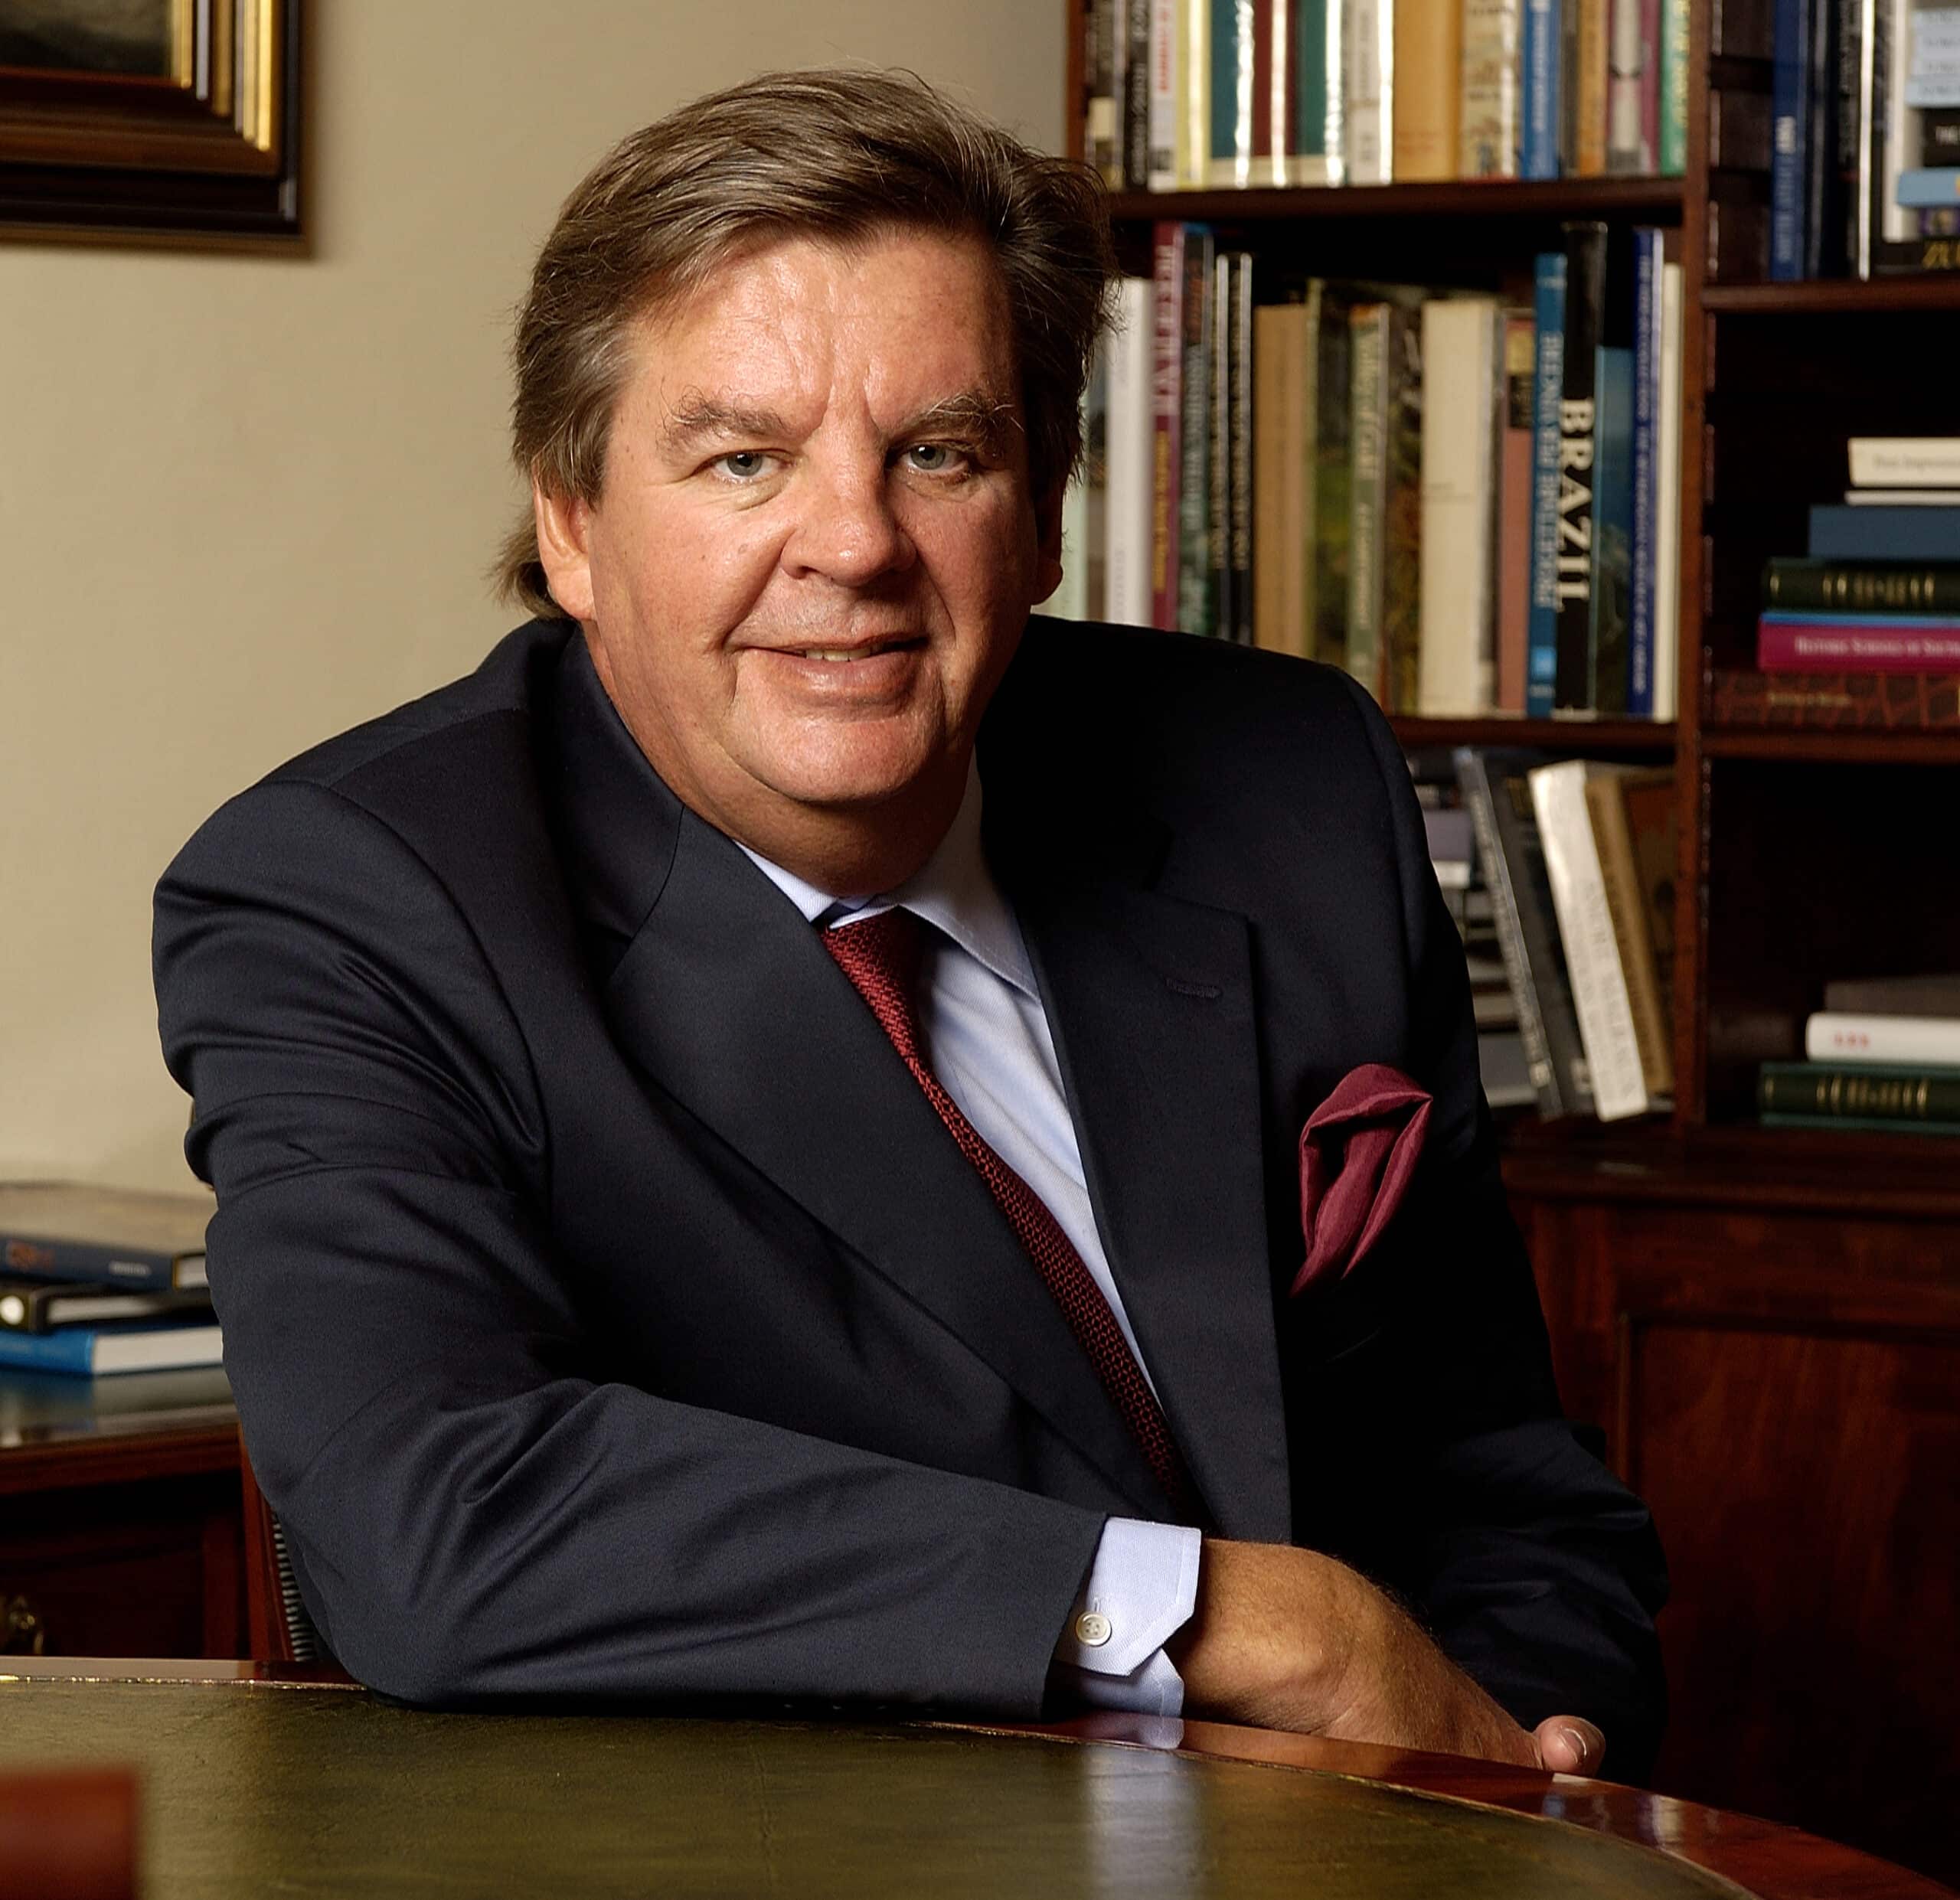 South African Billionaire, Johann Rupert